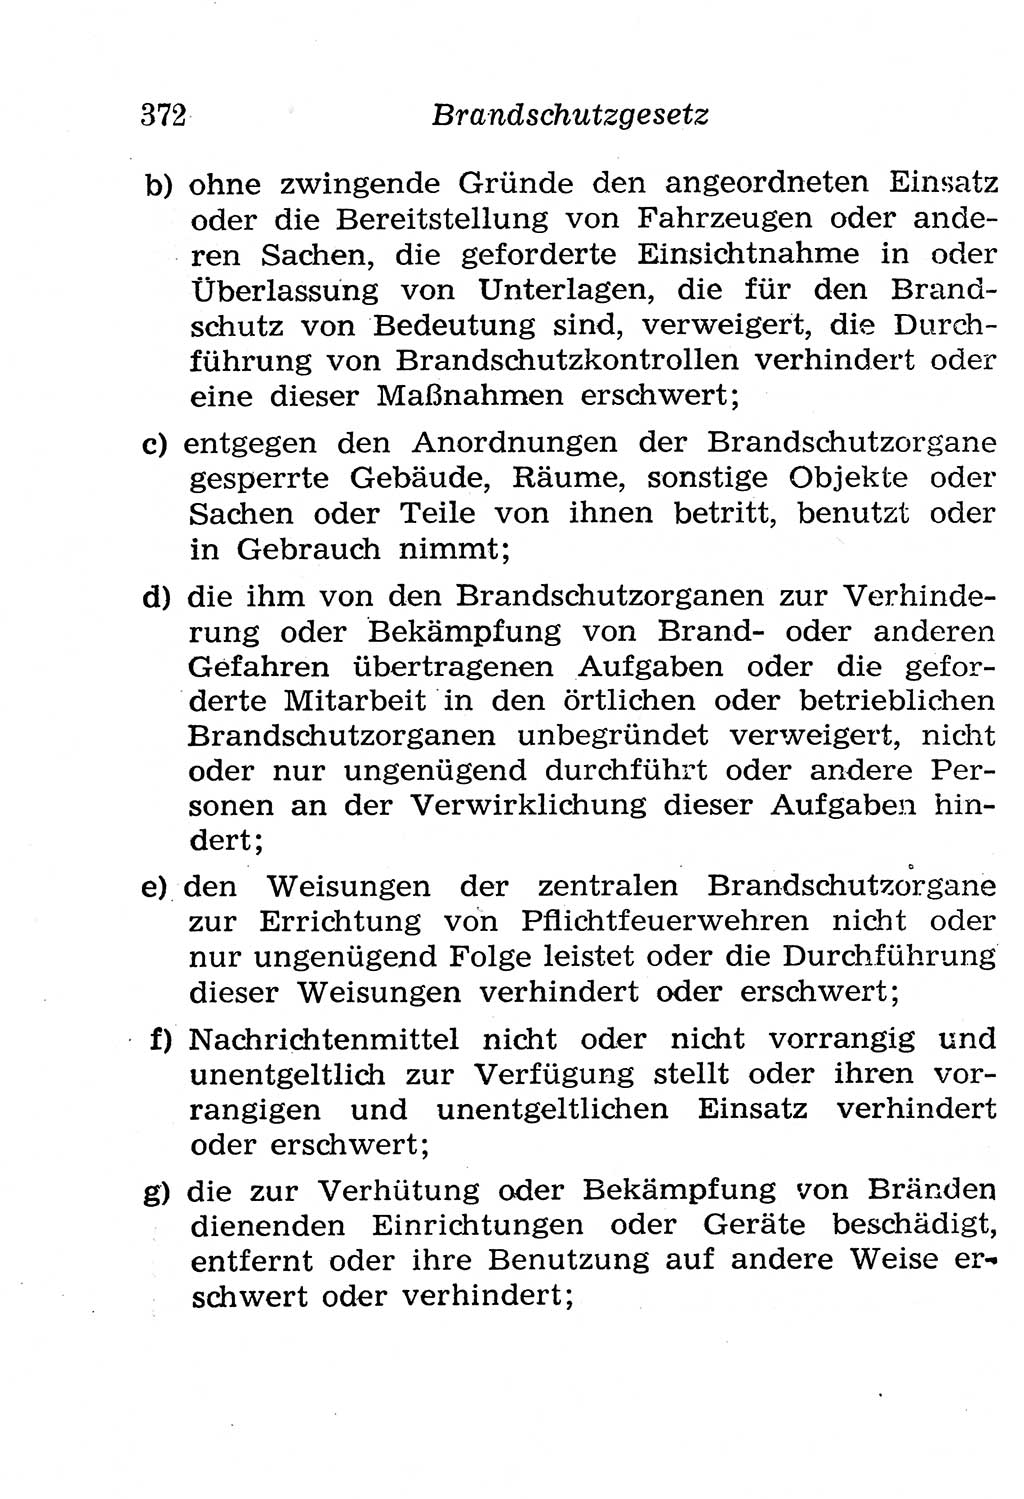 Strafgesetzbuch (StGB) und andere Strafgesetze [Deutsche Demokratische Republik (DDR)] 1958, Seite 372 (StGB Strafges. DDR 1958, S. 372)